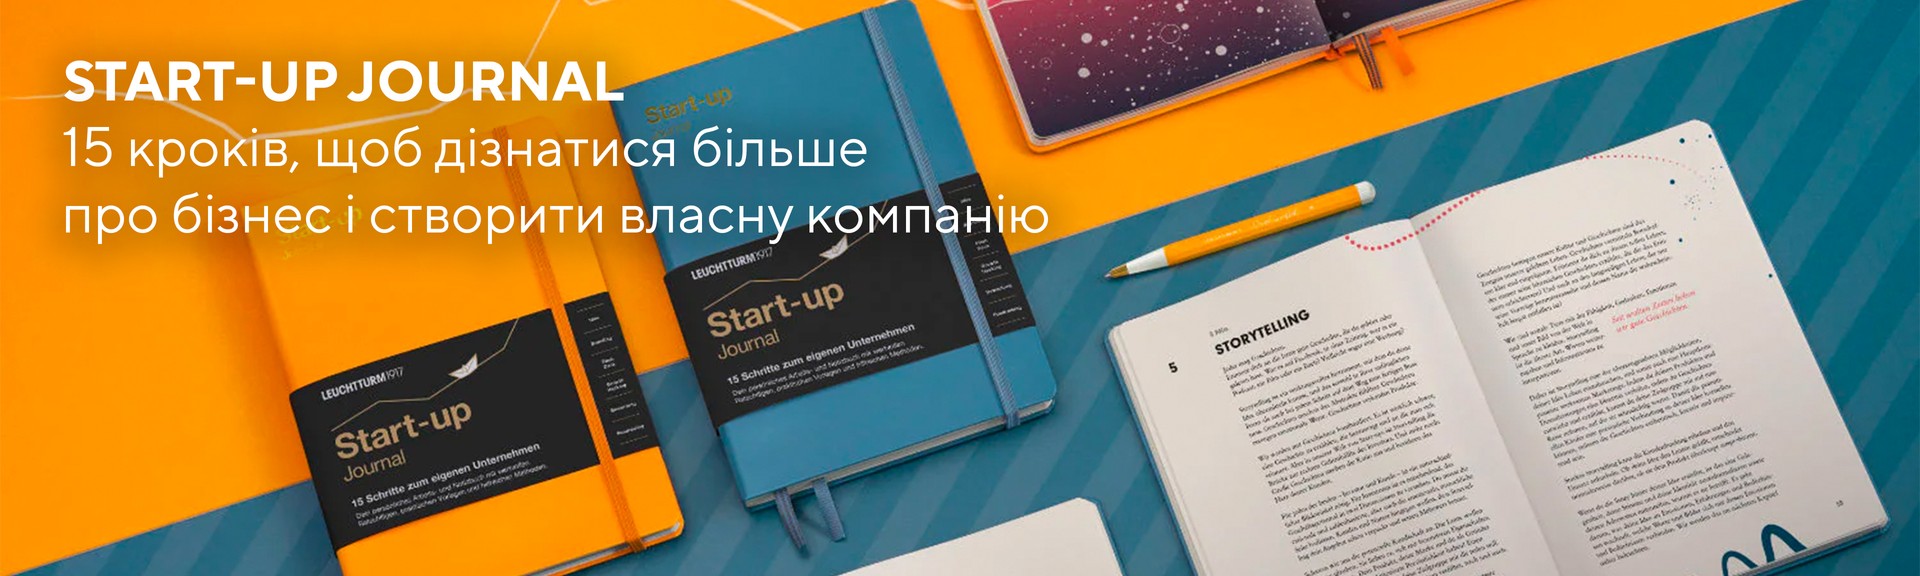 Start-up journal 15 кроків, щоб дізнатися більше про бізнес і створити власну компанію